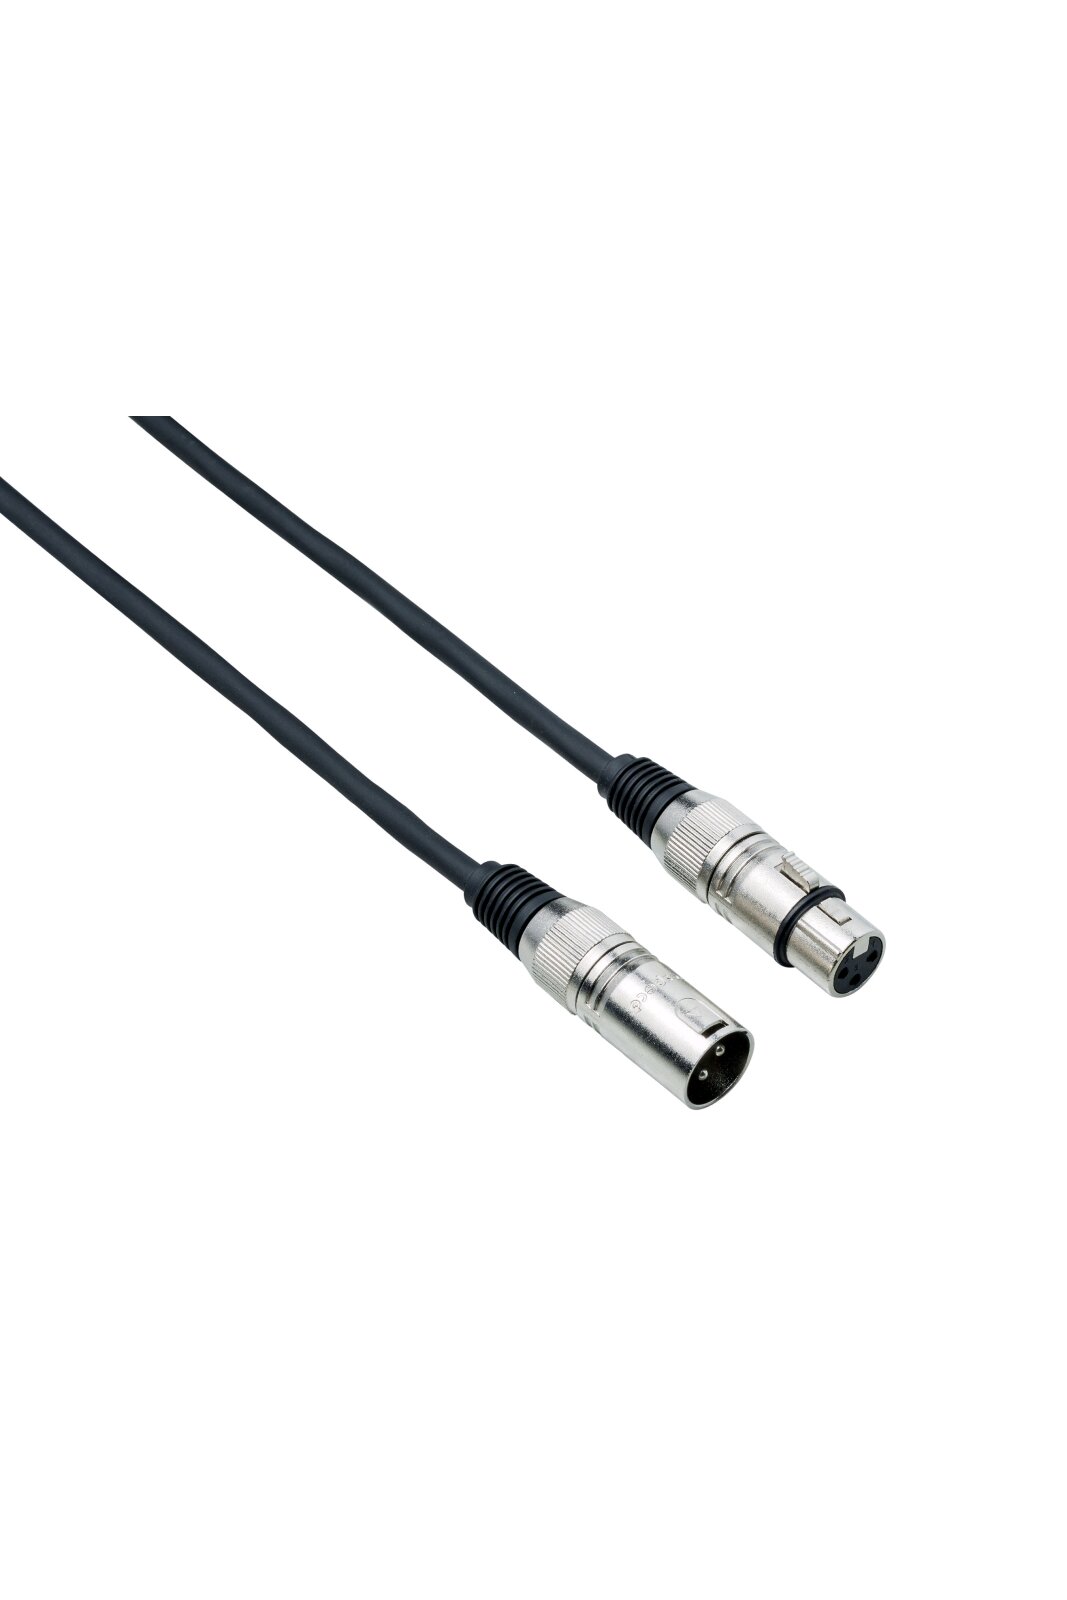 Bespeco DMX010 DMX cable 10 m : photo 1